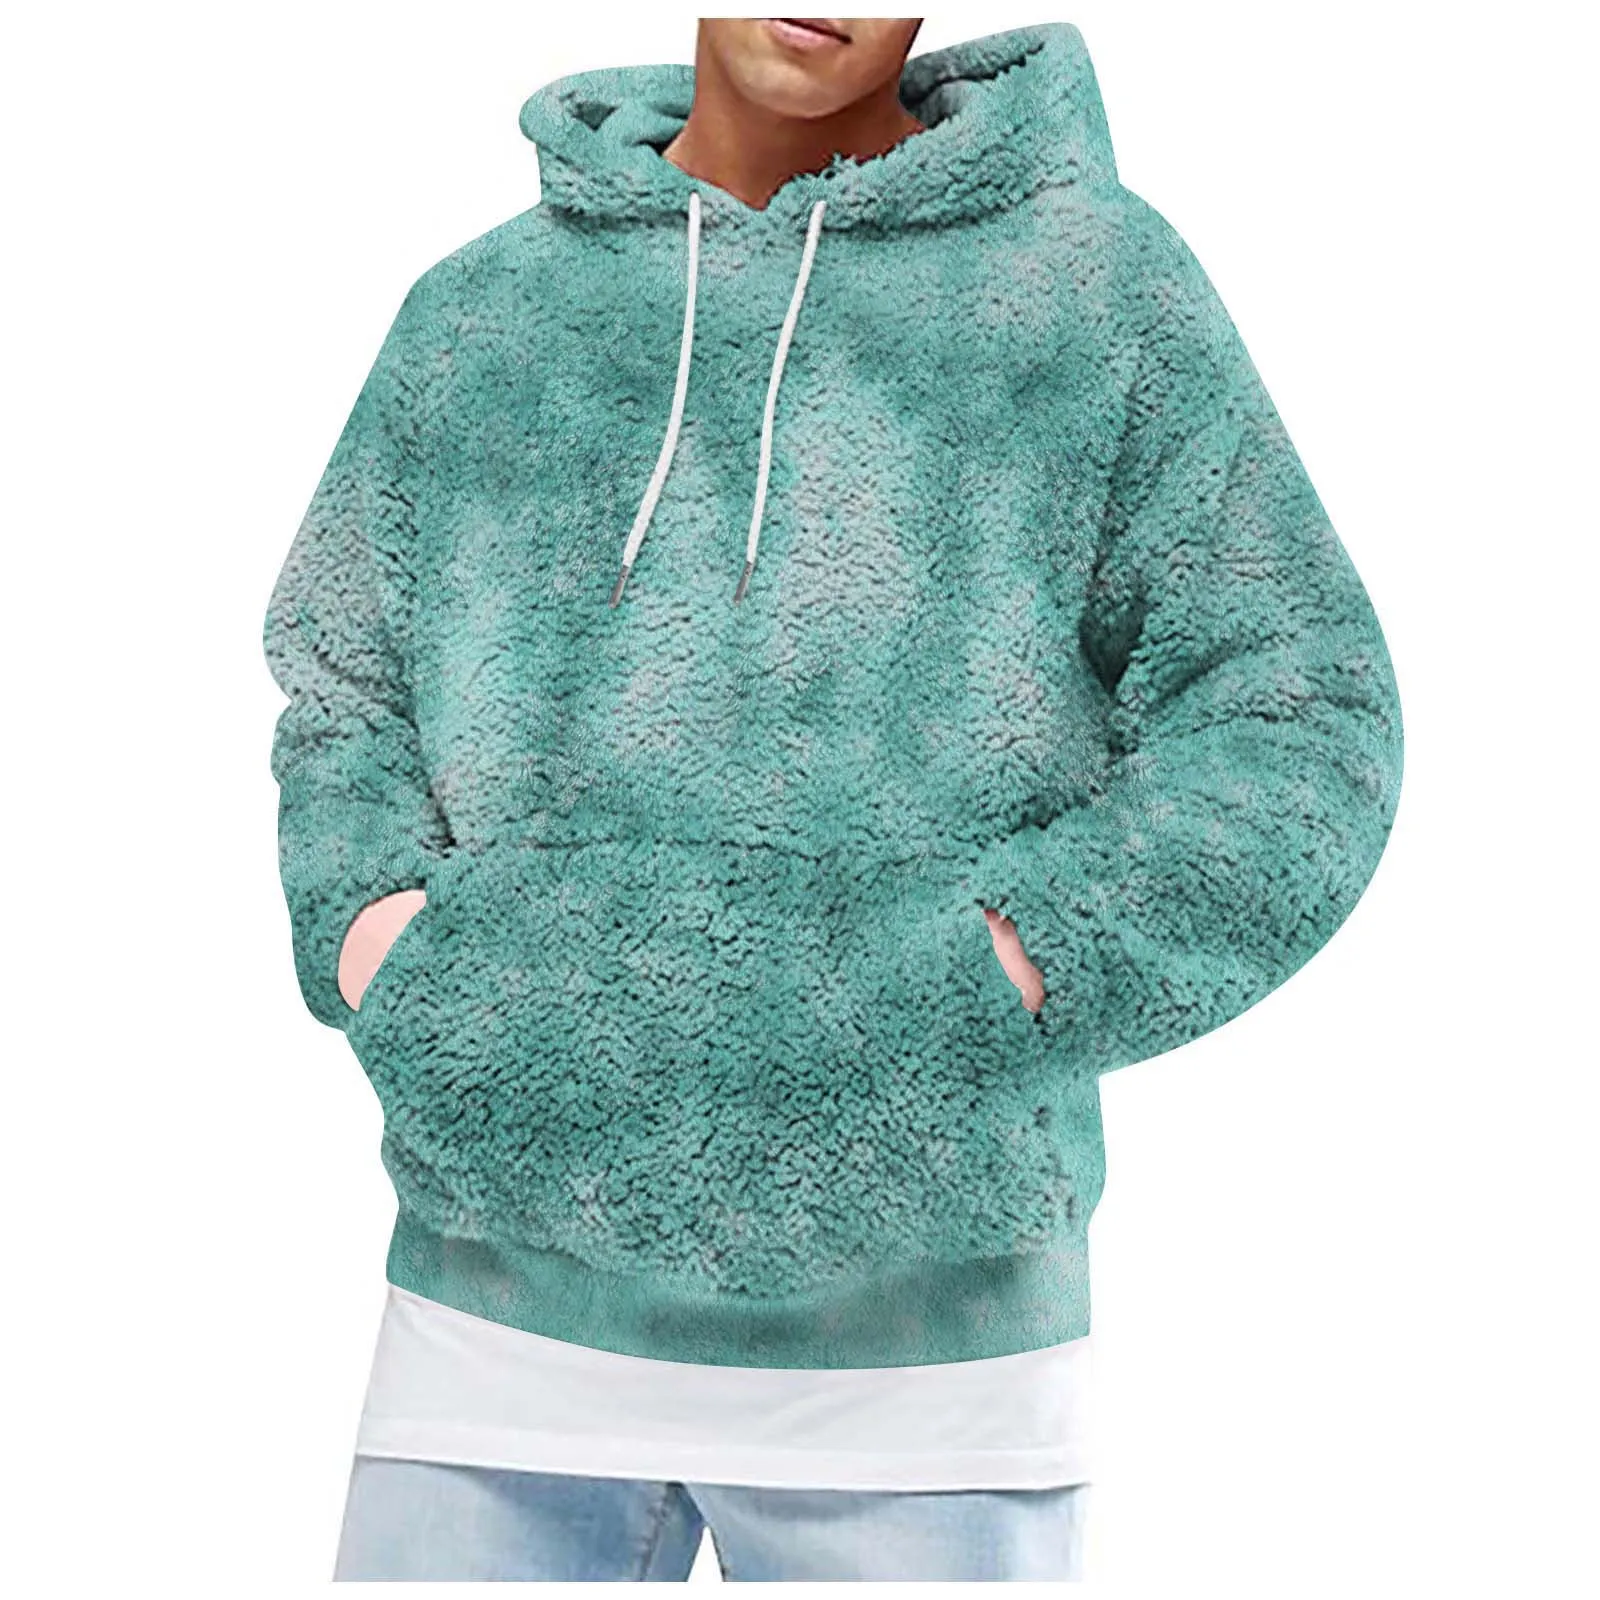 Jacket Hoodie Men's Coat Teal Hooded  Sweatshirt Sweater Winter Fleece Zipper